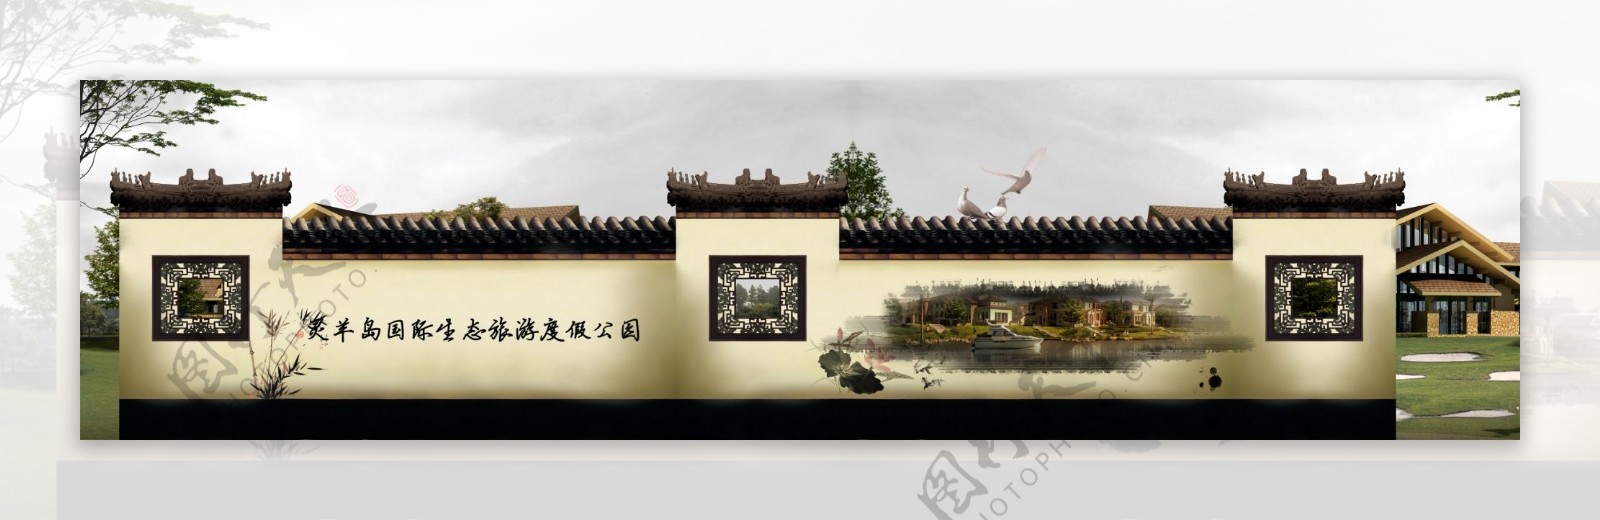 房地产围墙广告图片围墙效果图背景图